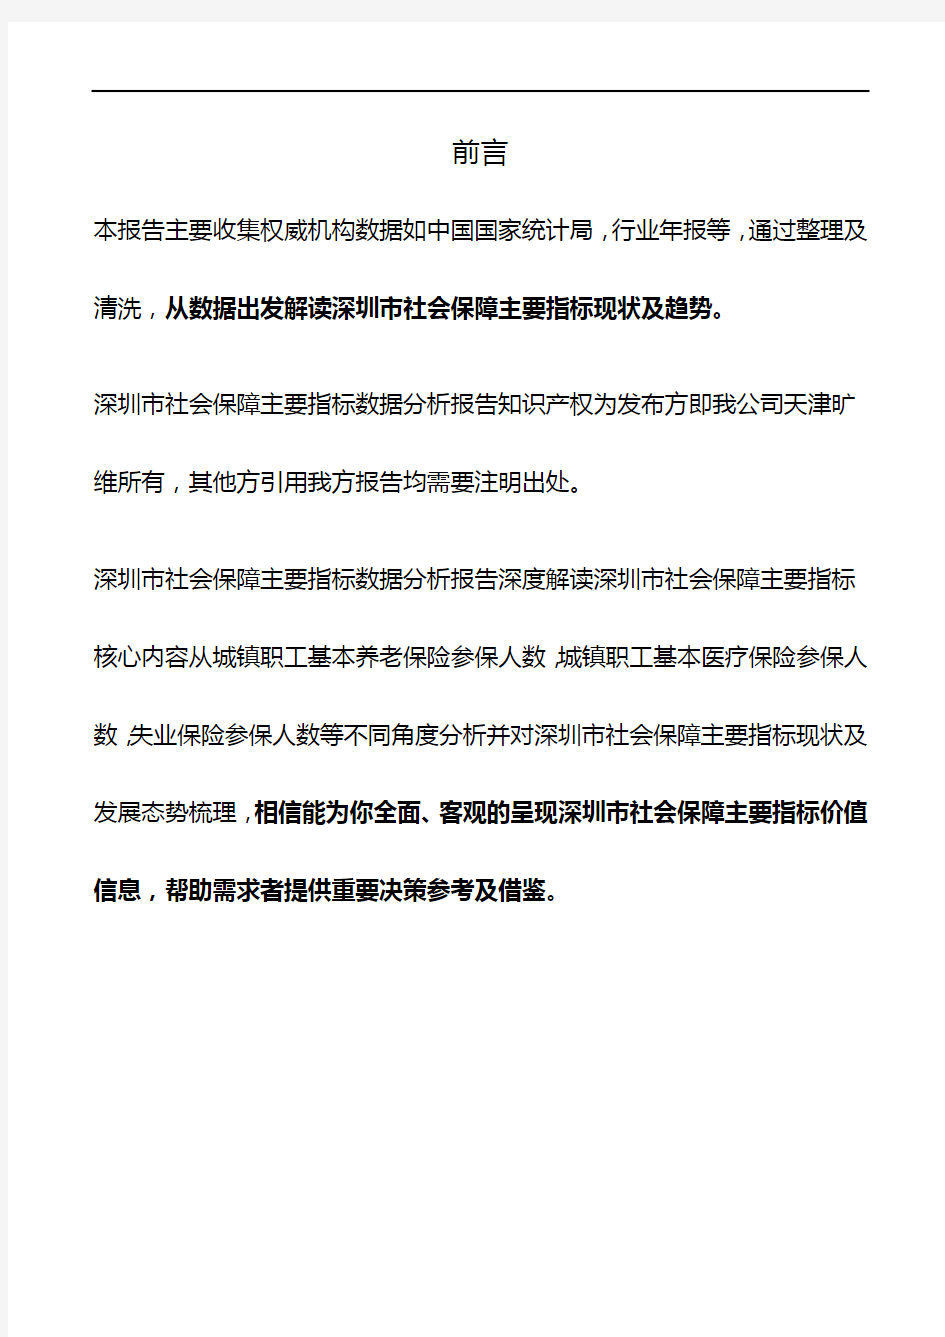 深圳市(全市)社会保障主要指标3年数据分析报告2019版